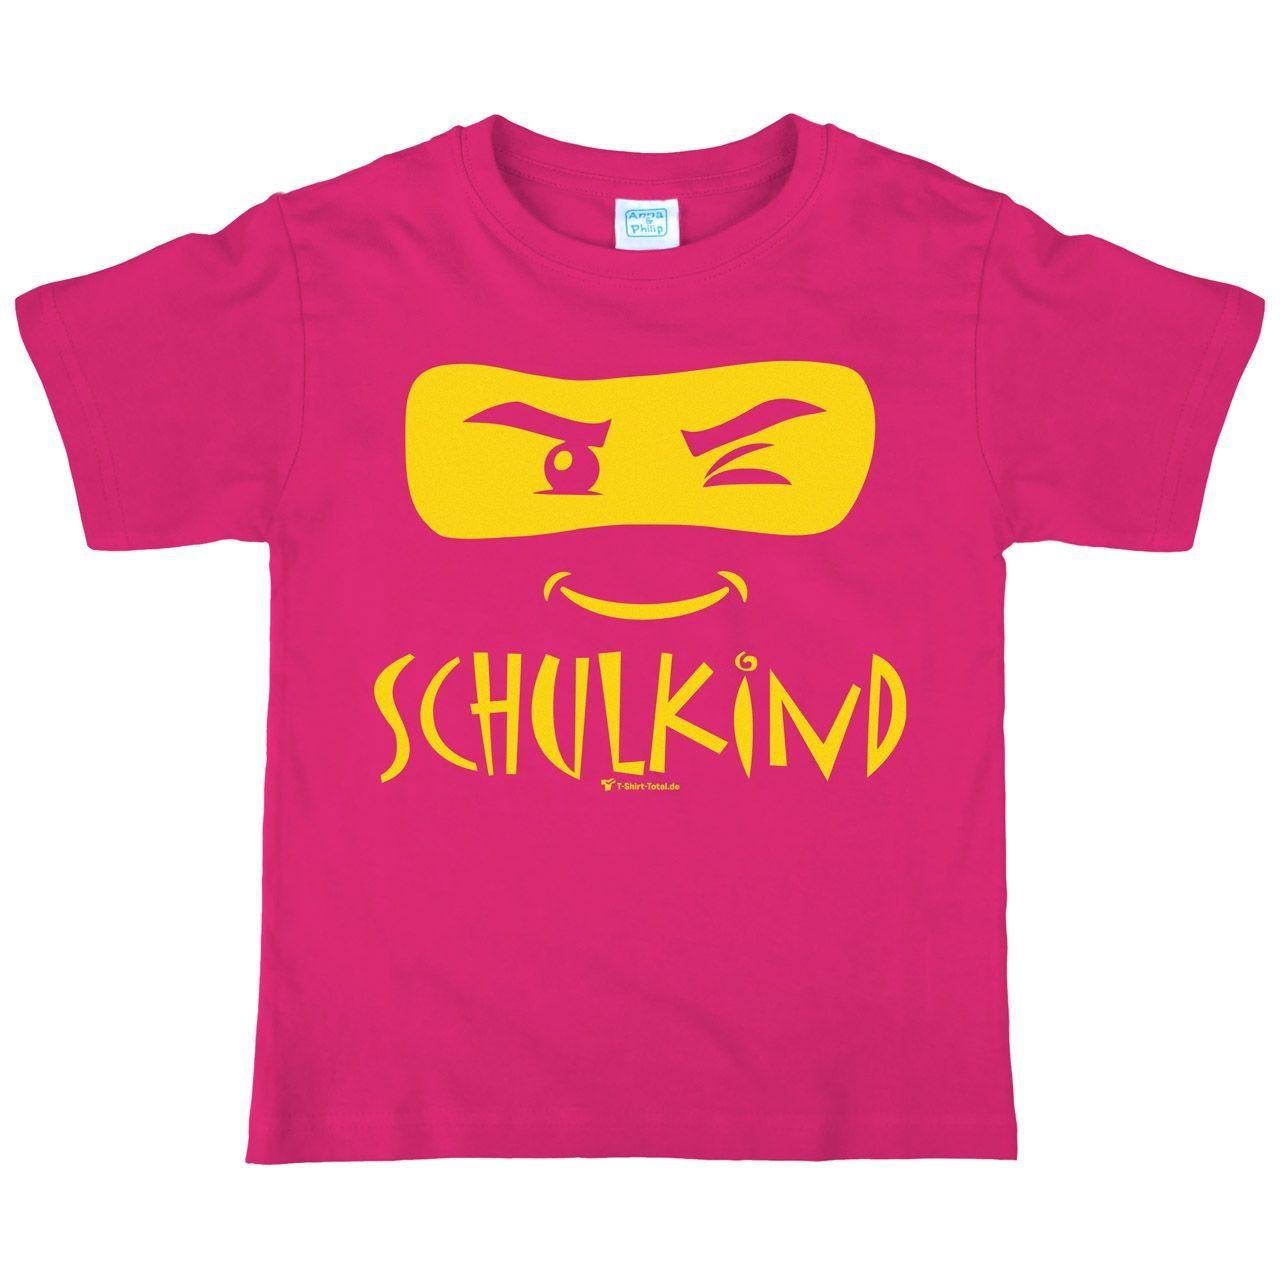 Schulkind Maske Kinder T-Shirt pink 122 / 128